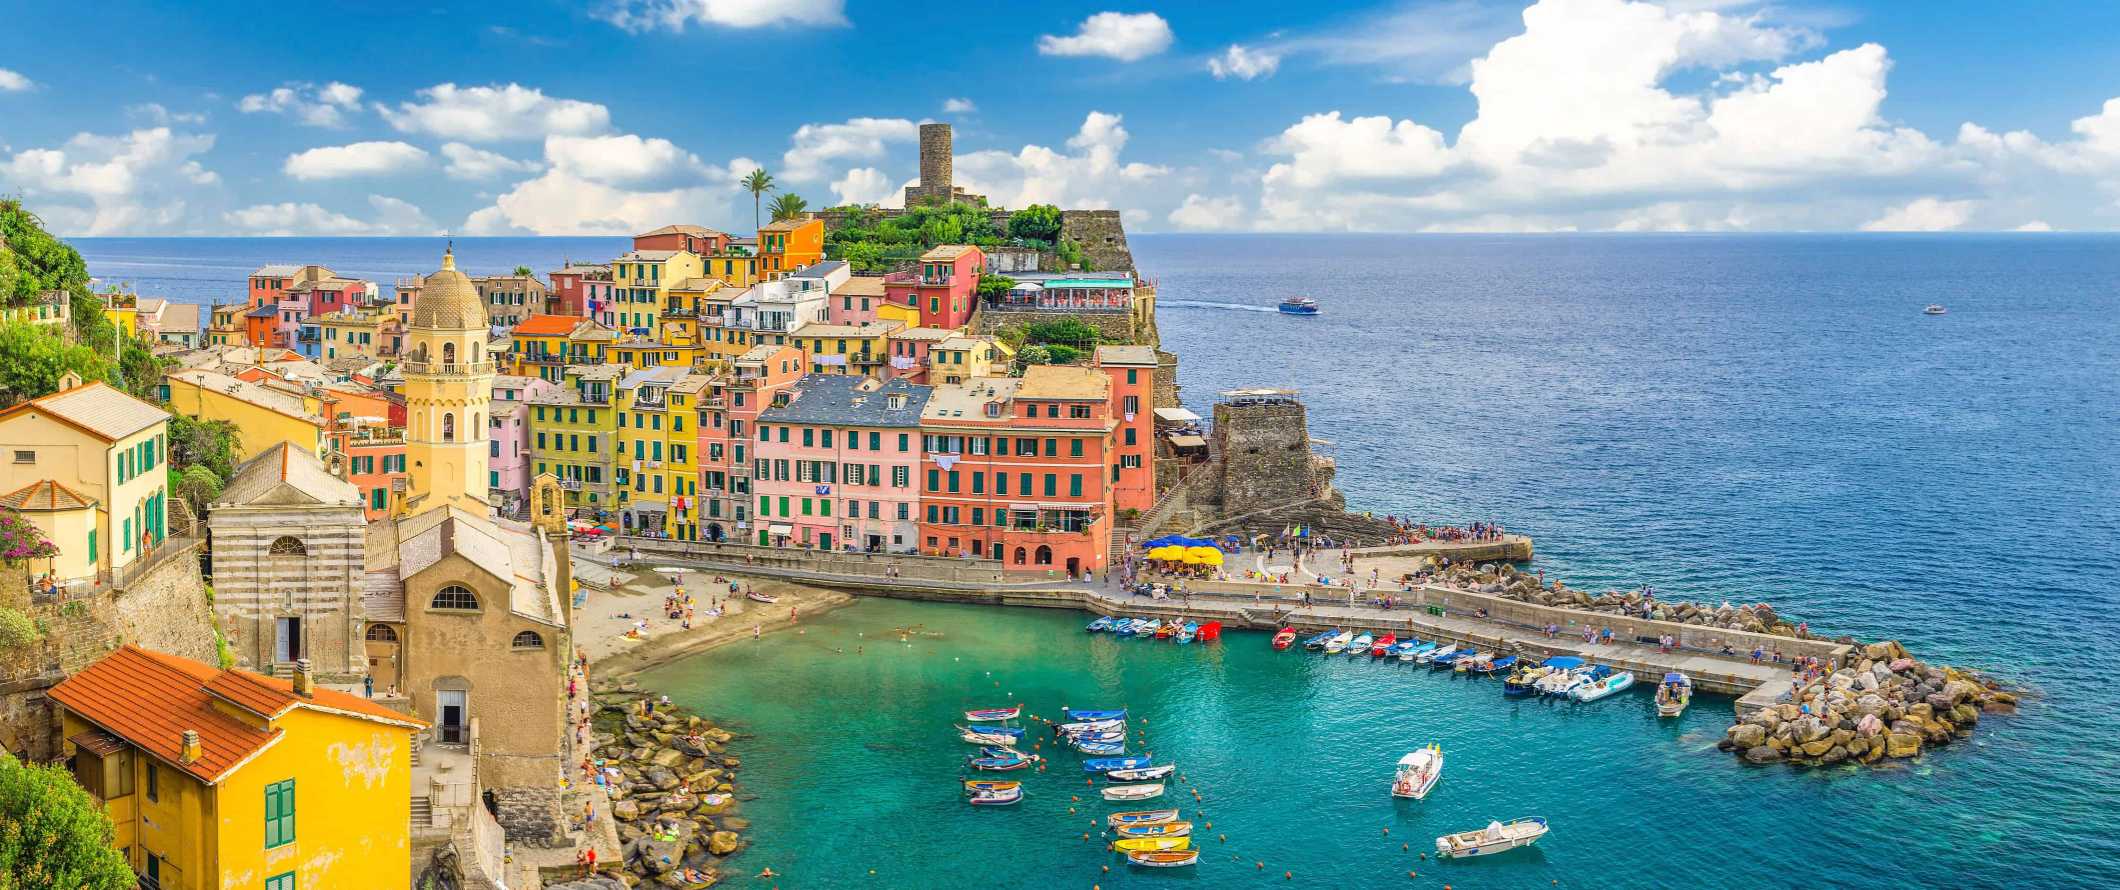 Edifícios coloridos e um porto cheio de barcos na cidade de Vernazza, na região de Chinkwe-Terre, Itália.